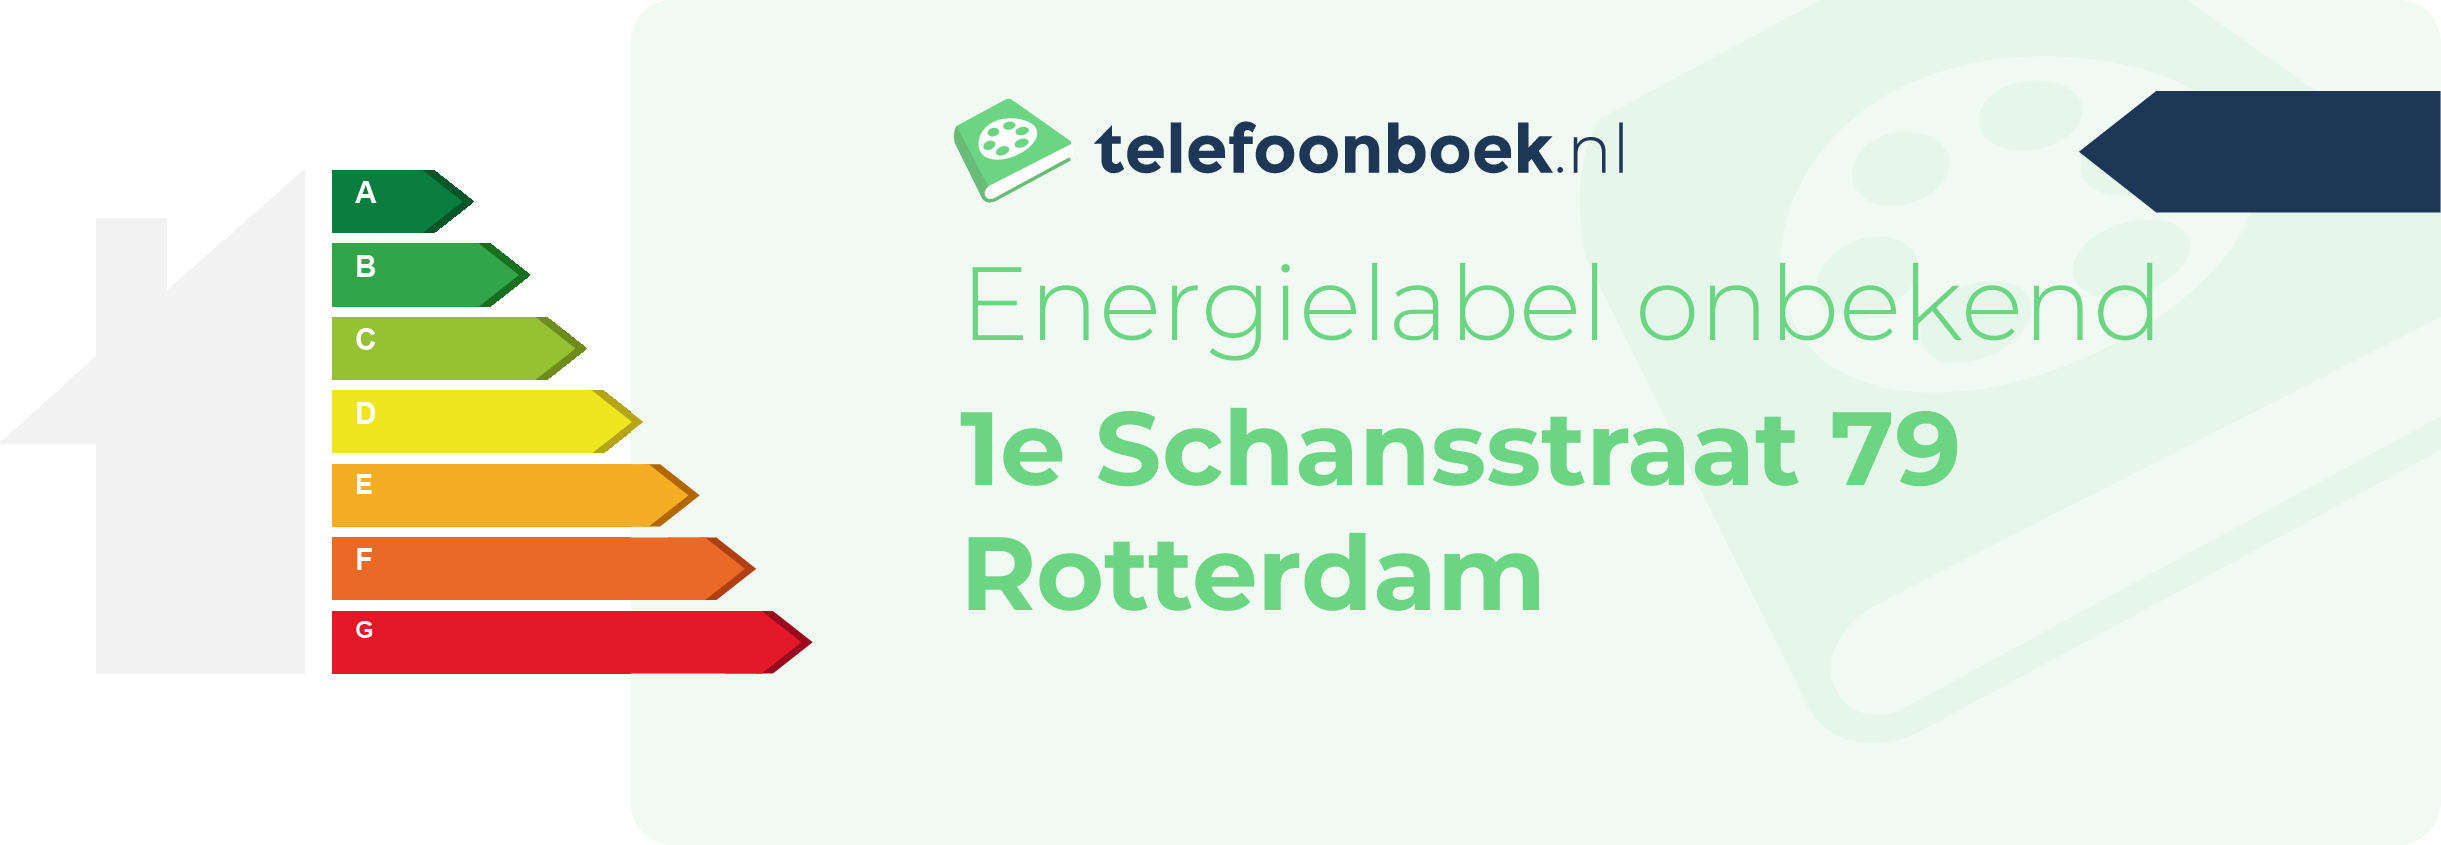 Energielabel 1e Schansstraat 79 Rotterdam